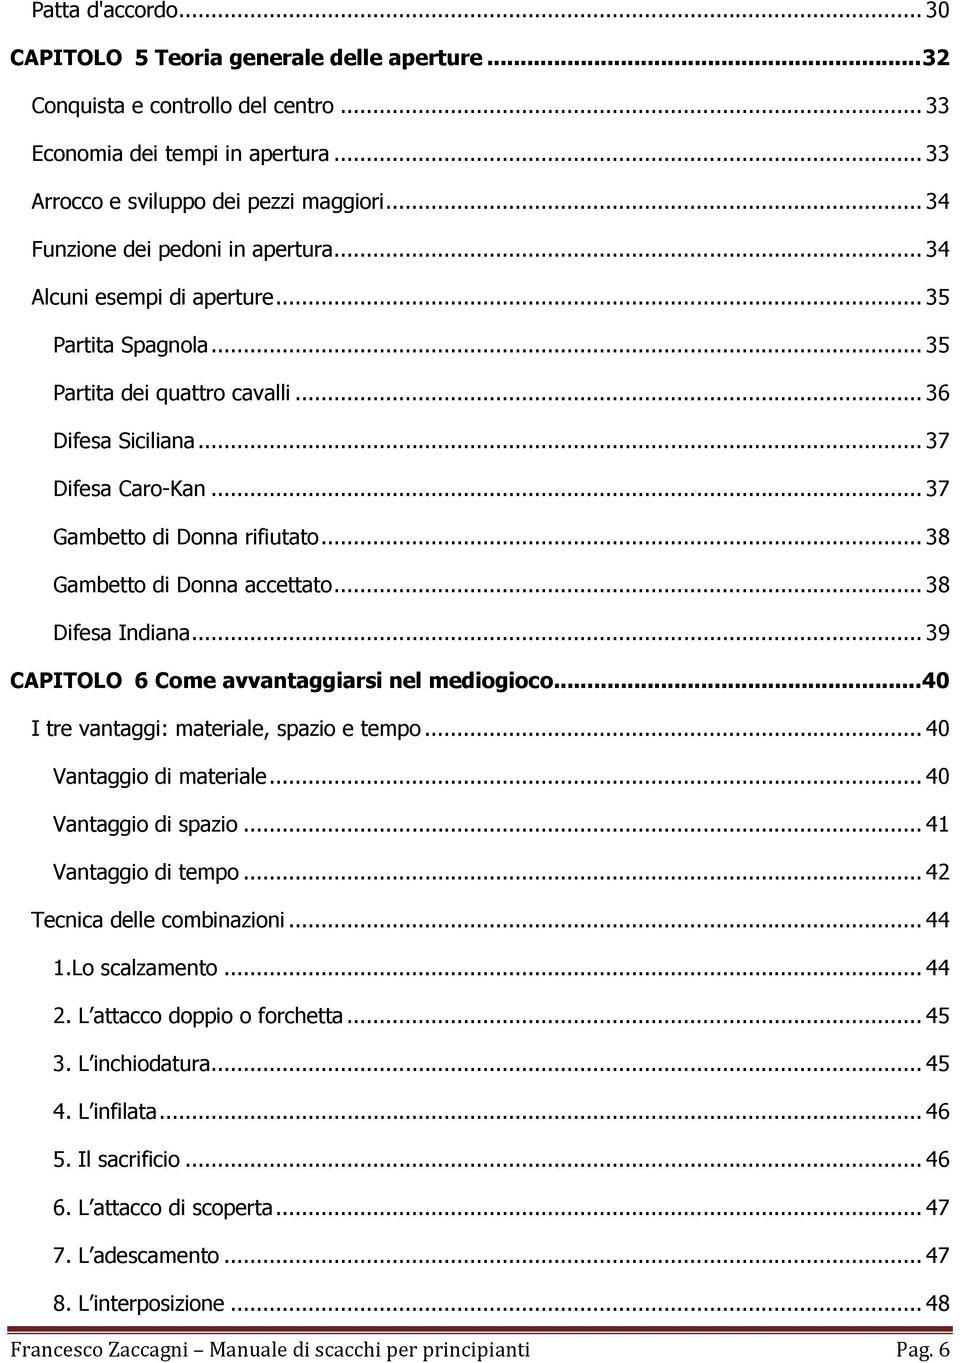 Il Primo Manuale Degli Scacchi 1 PDF - amissioformulaorg